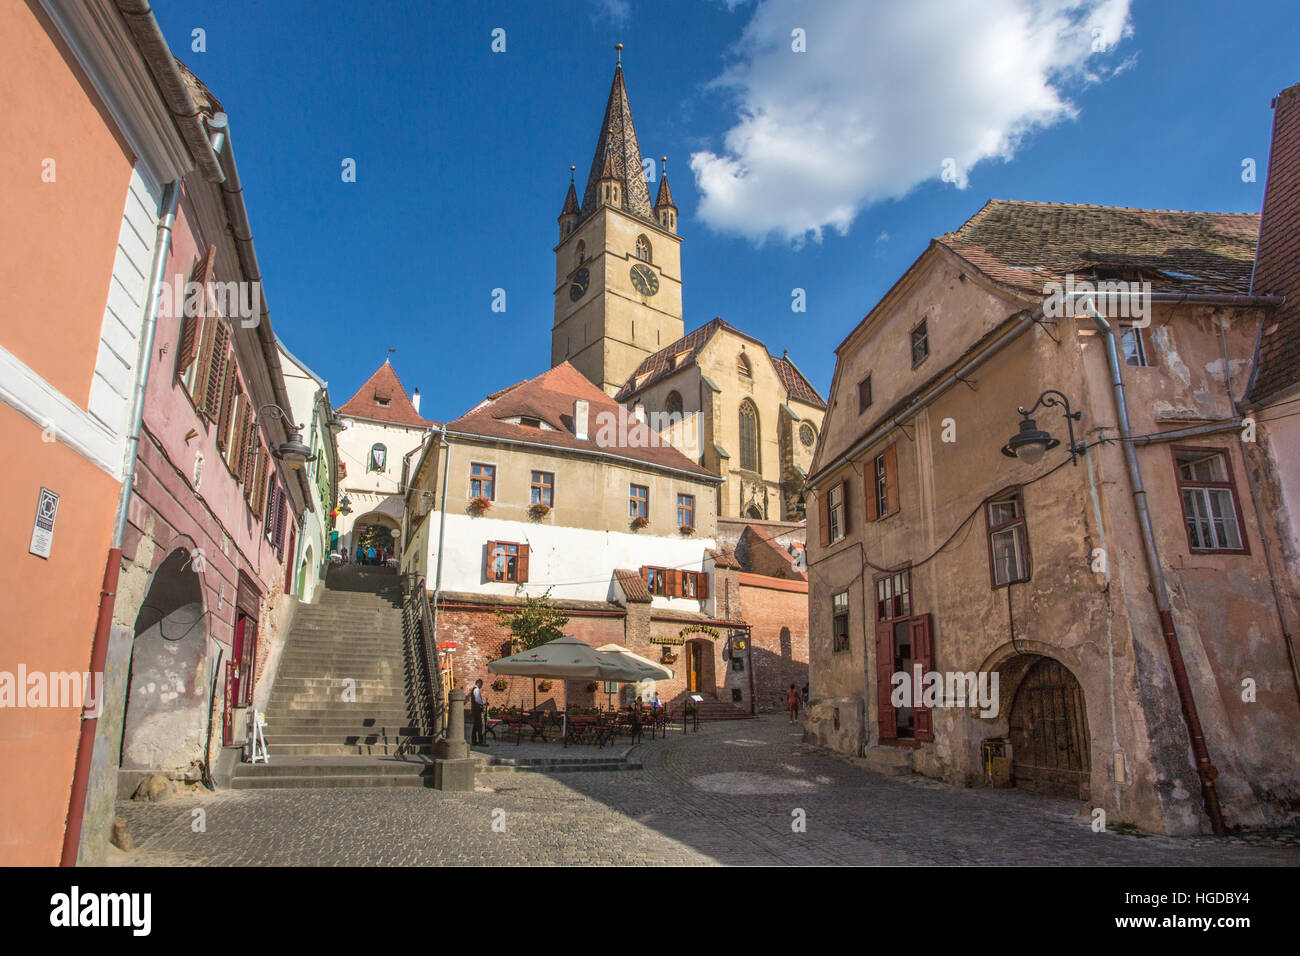 La ville de Sibiu, Roumanie, la Tour de la cathédrale évangélique Banque D'Images